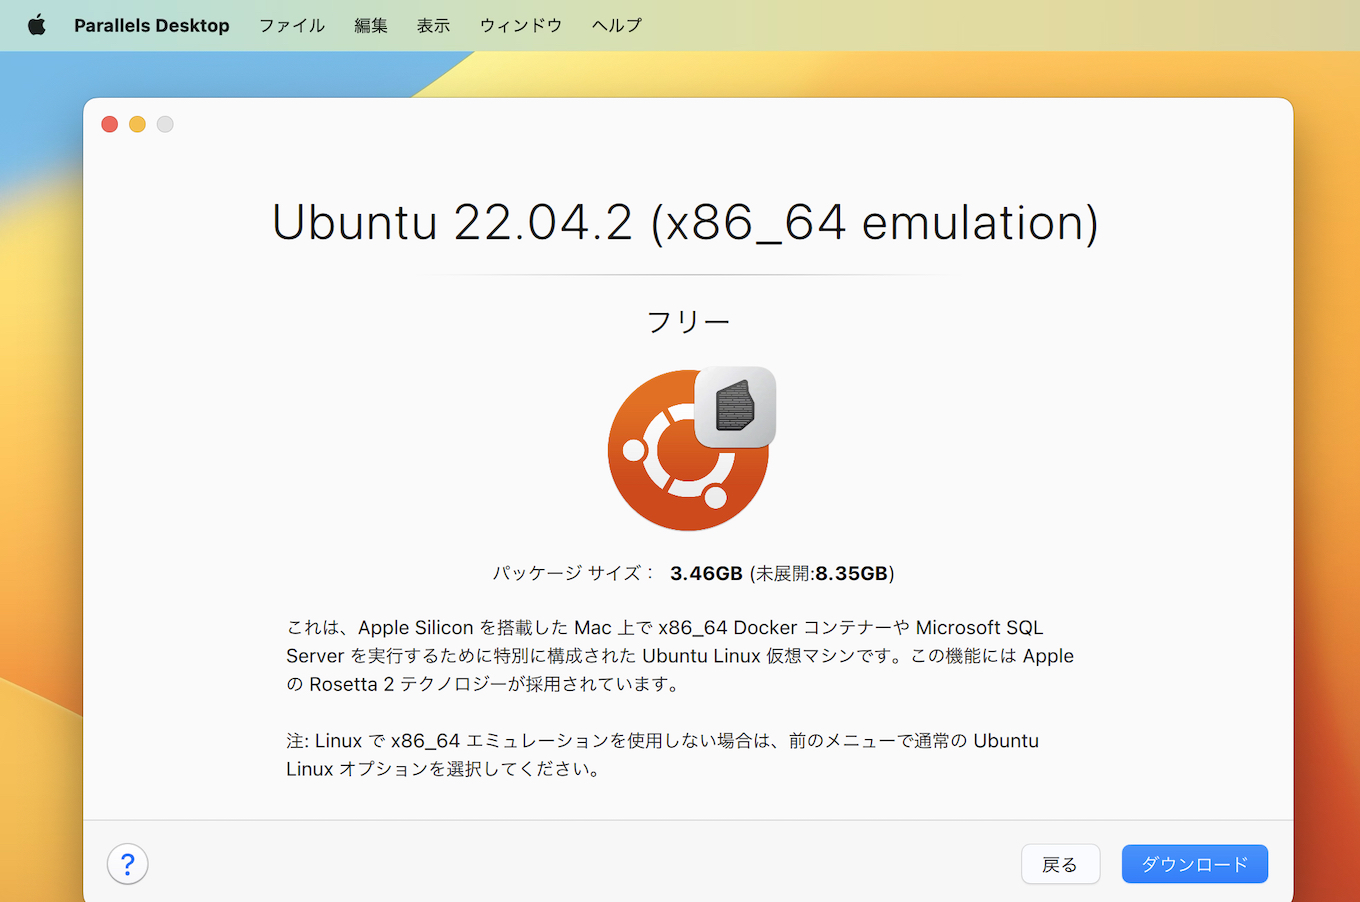 Ubuntu Linux Arm VM with x86_64 emulation